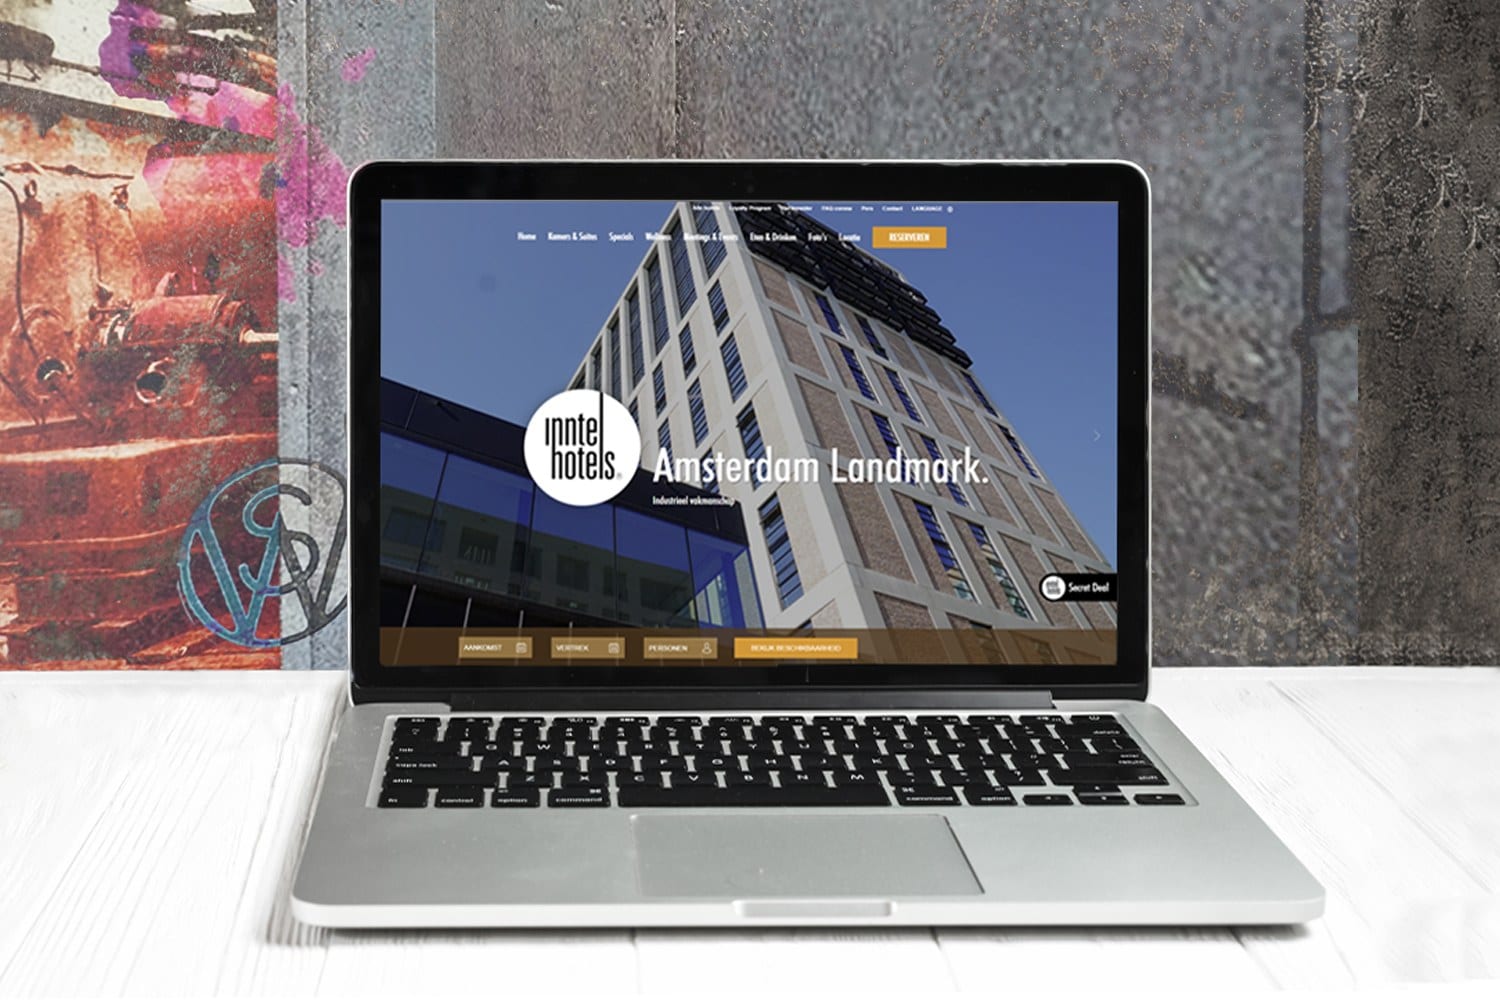 Innsider Inntel Hotels Amsterdam Landmark Website live